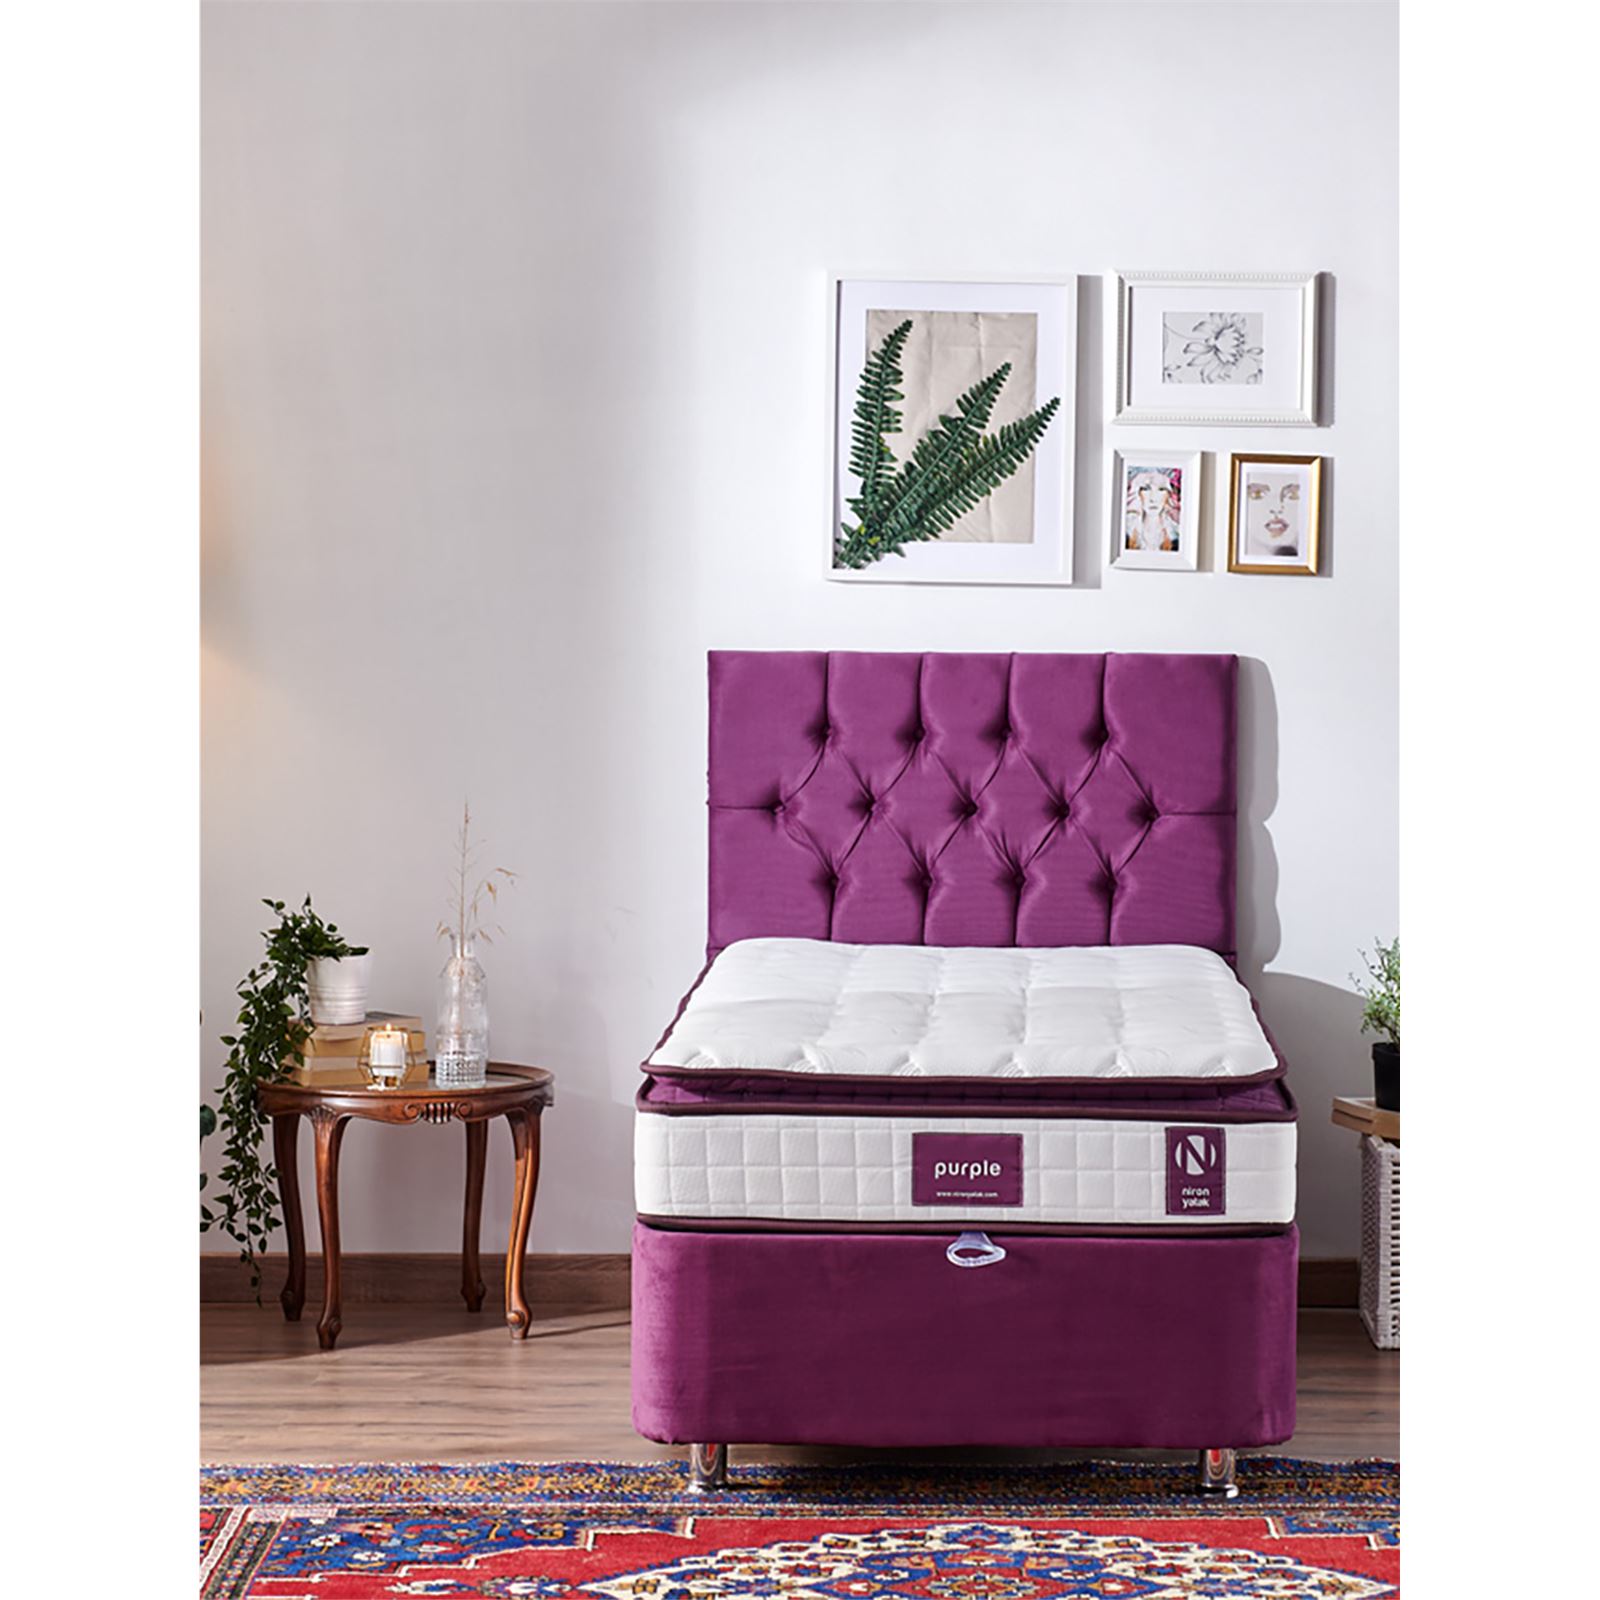 Niron Purple Yatak Seti 90x190 cm Tek Kişilik Yatak Baza Başlık Takımı Orta Sert Yatak Baza ve Başlığı Mor